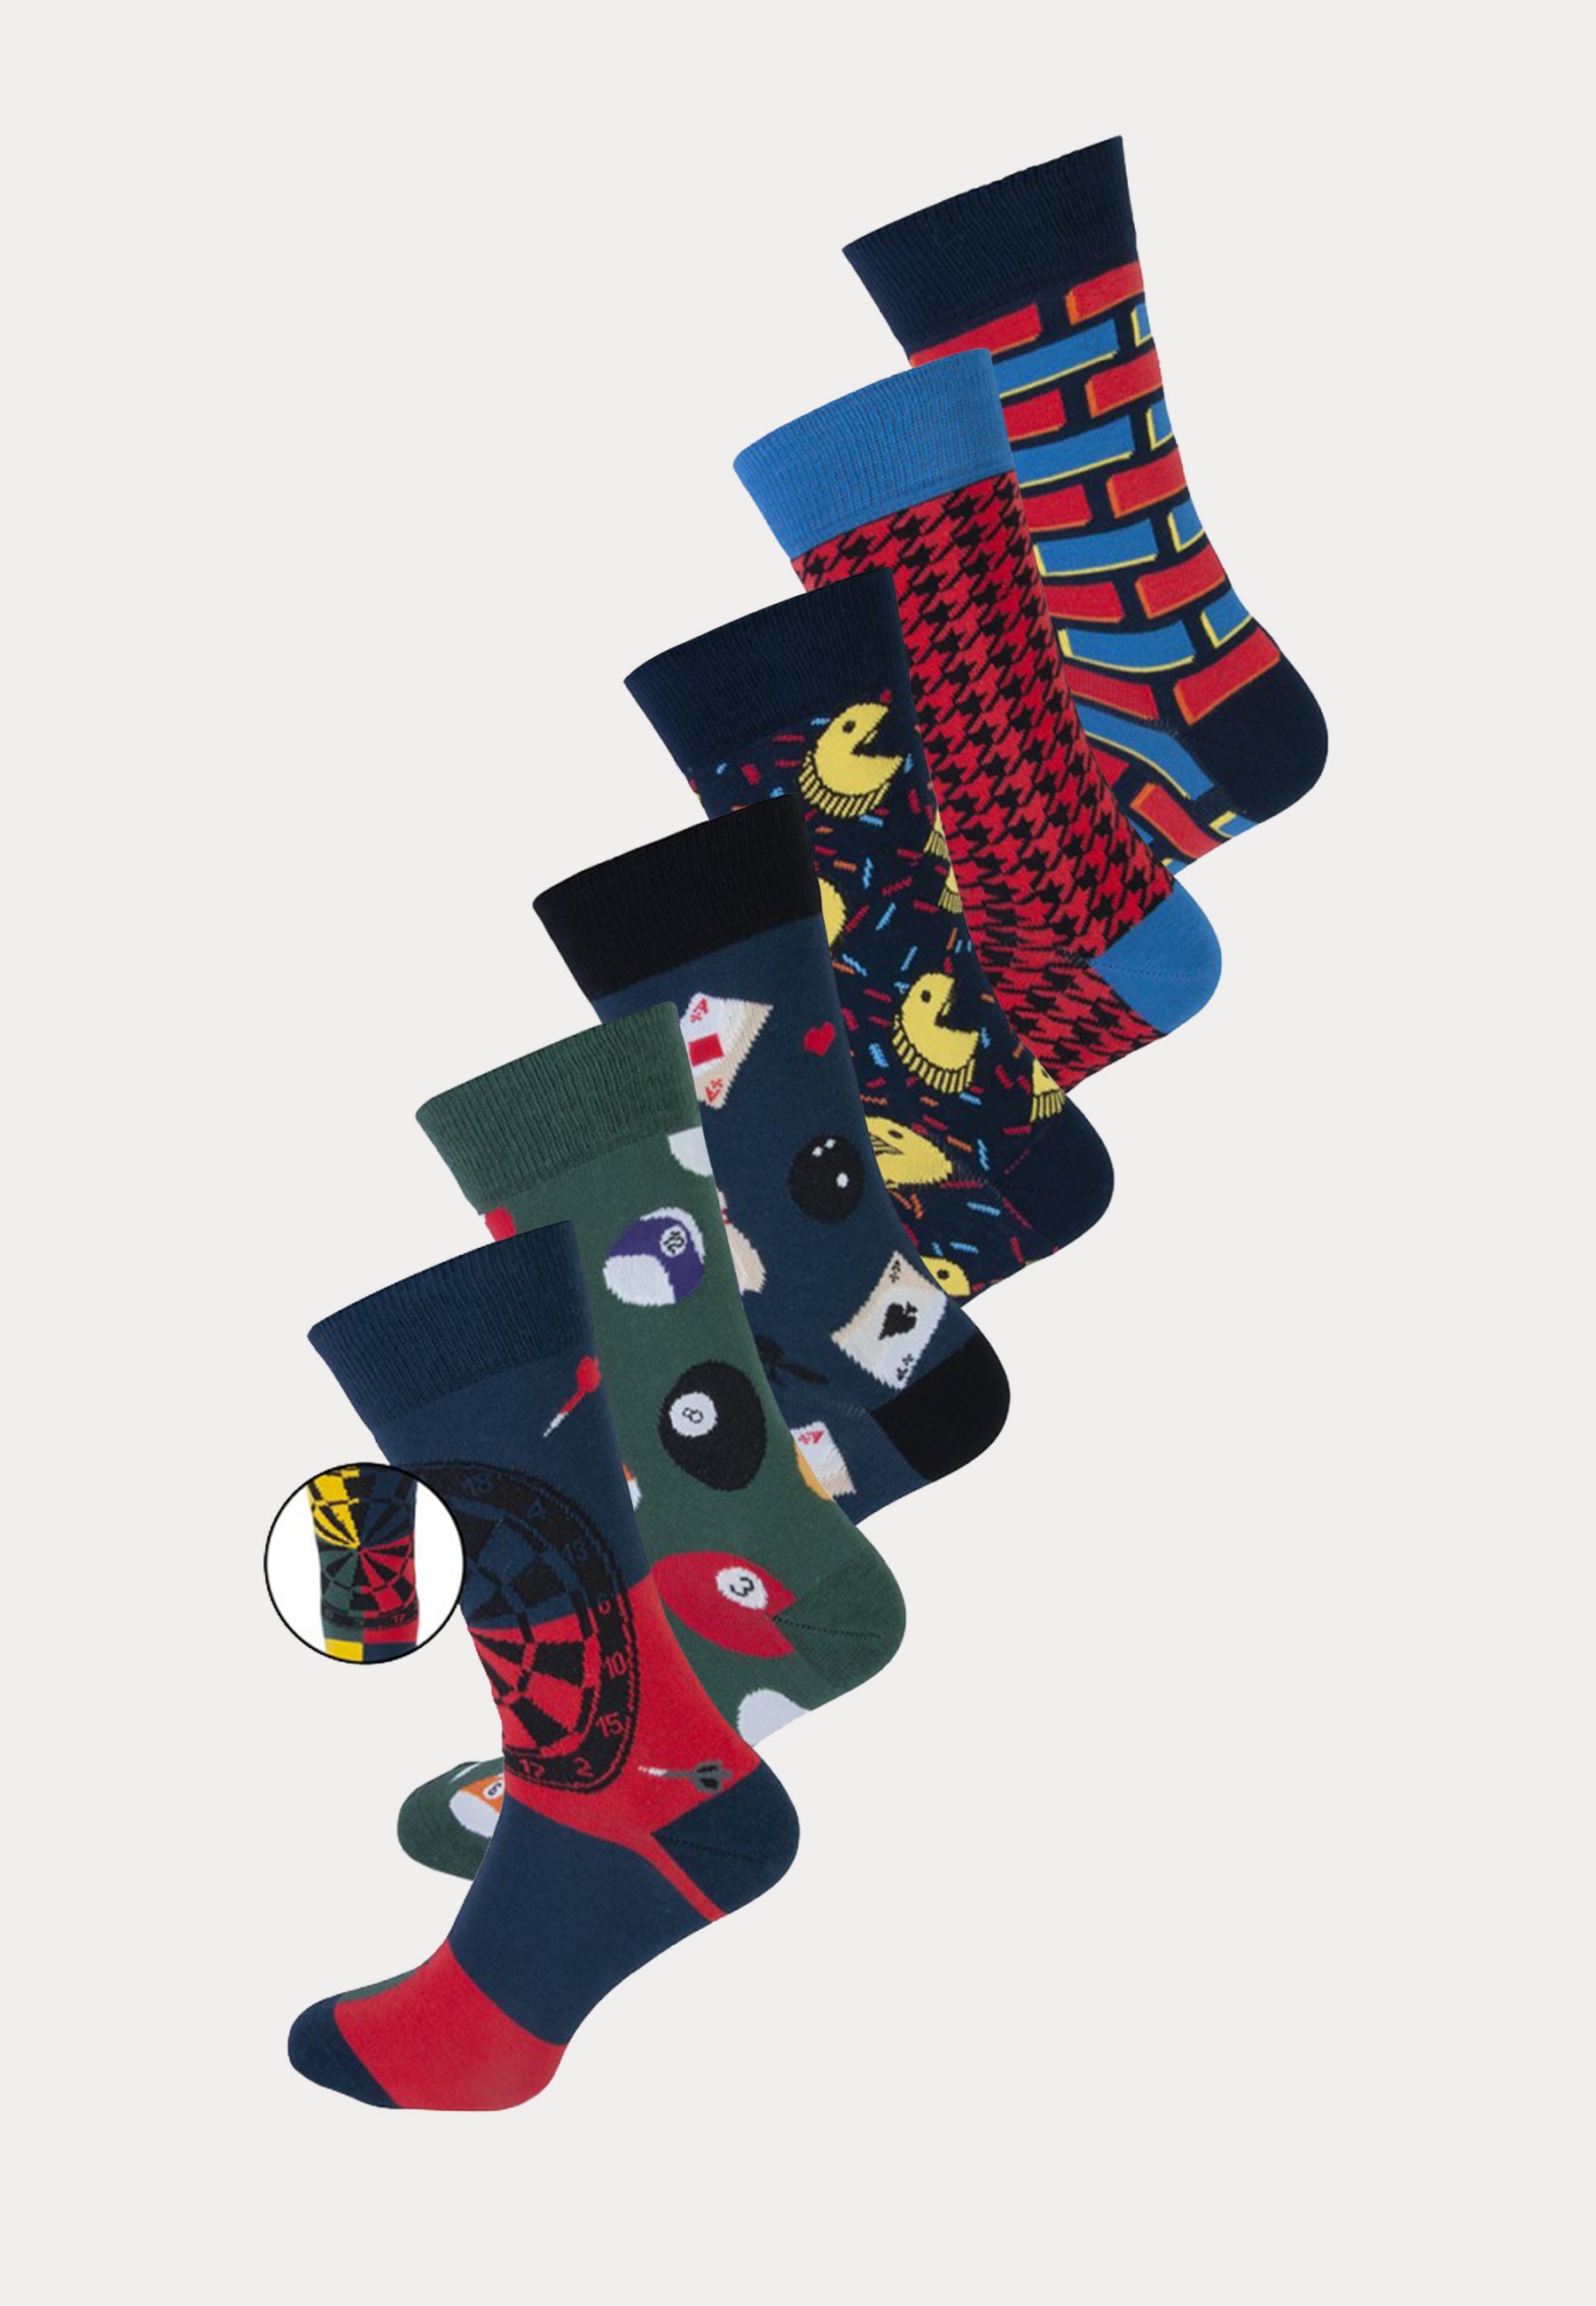 6 paar fashion socks met print van games van het merk Teckel